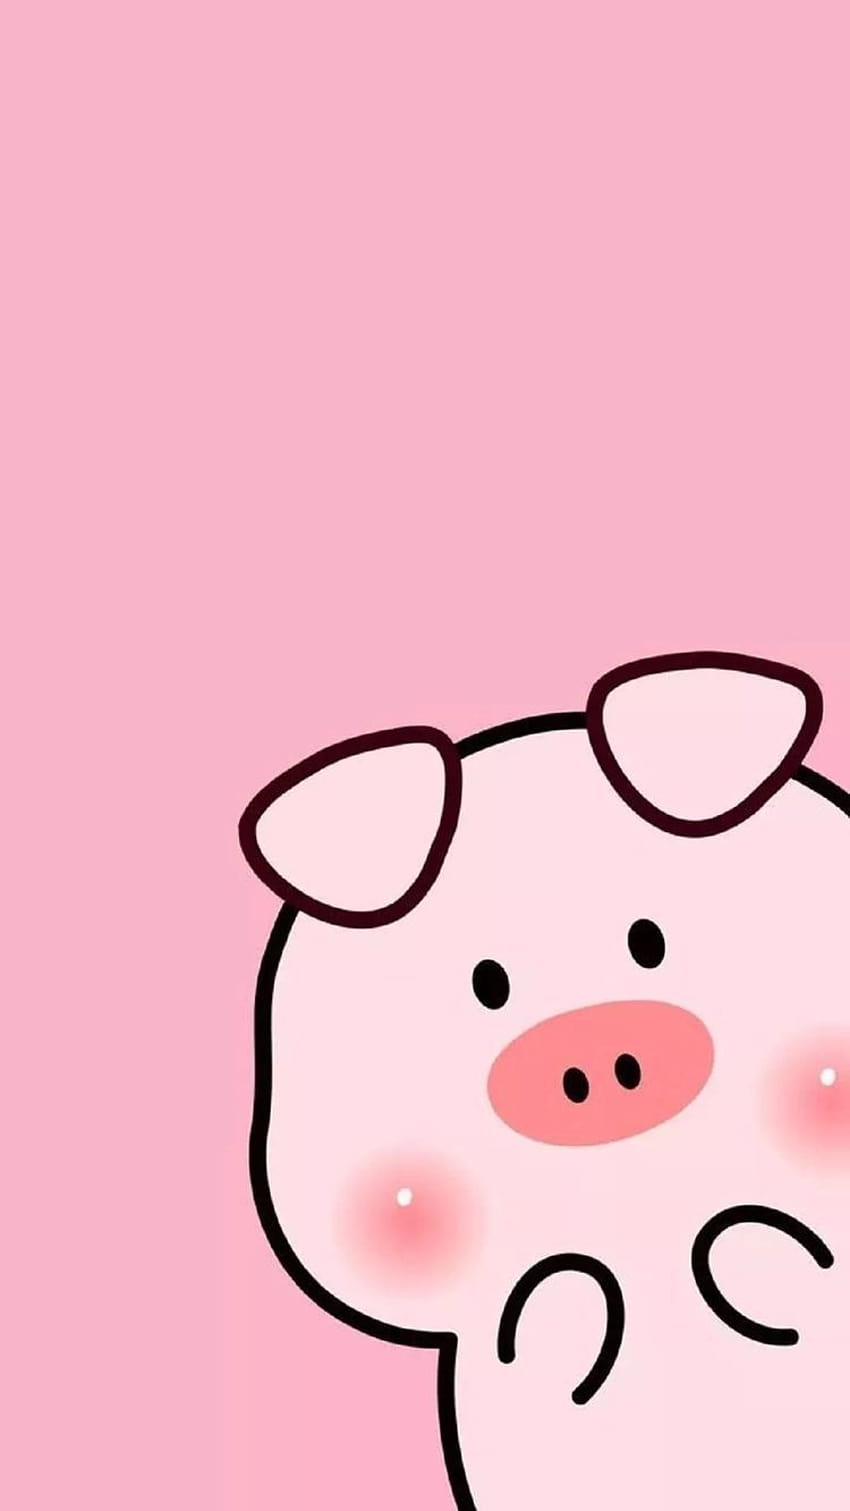 Cute Pig iPhone, piggy cute HD phone wallpaper